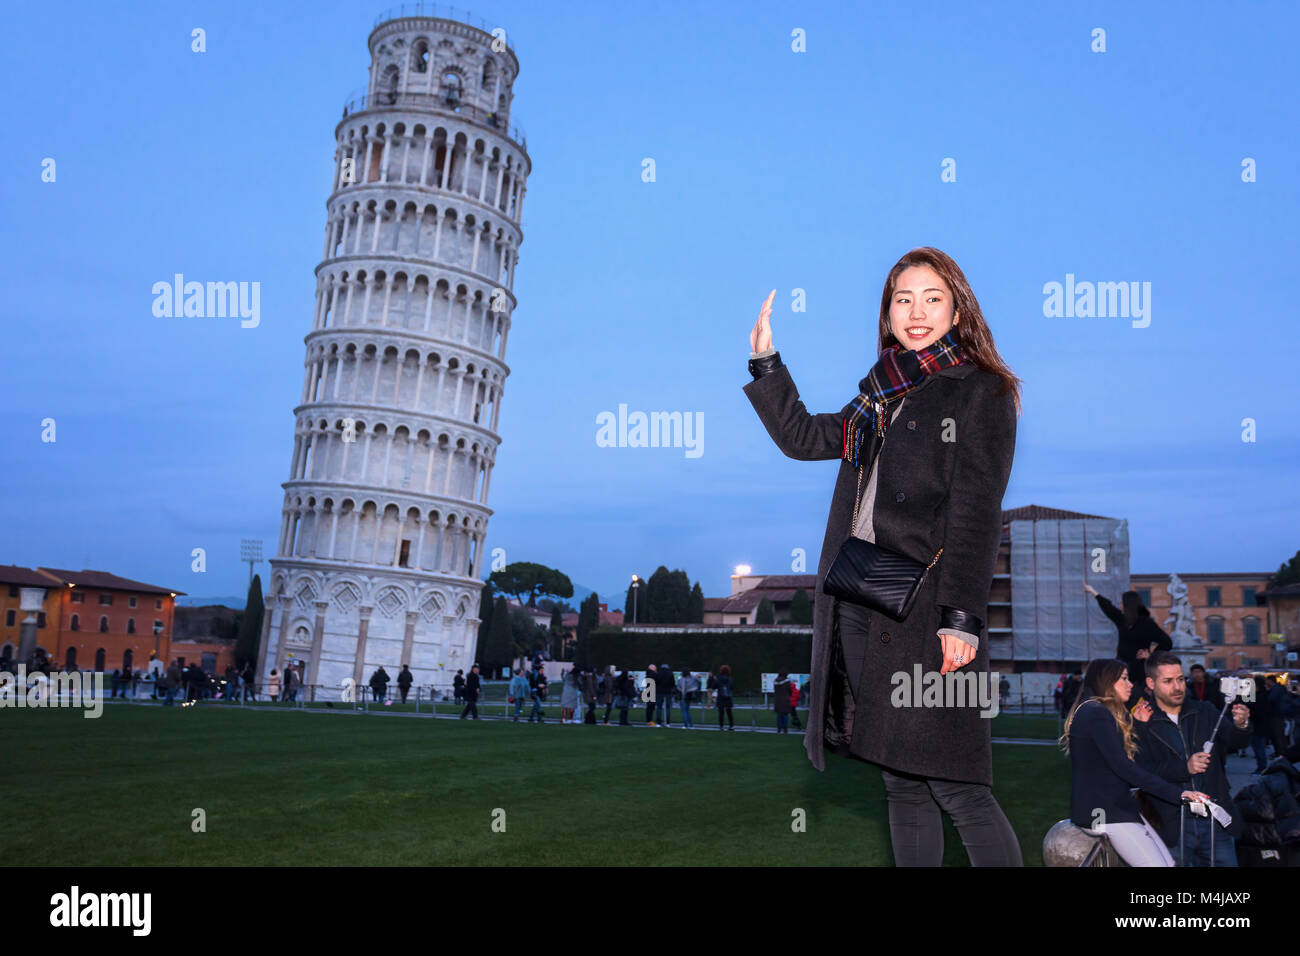 Pisa, Italien - 11. Februar 2018: Asiatische Girl posiert für ein Foto mit den berühmten Turm von Pisa im Hintergrund, in der Piazza dei Miracoli überfüllt mit t Stockfoto